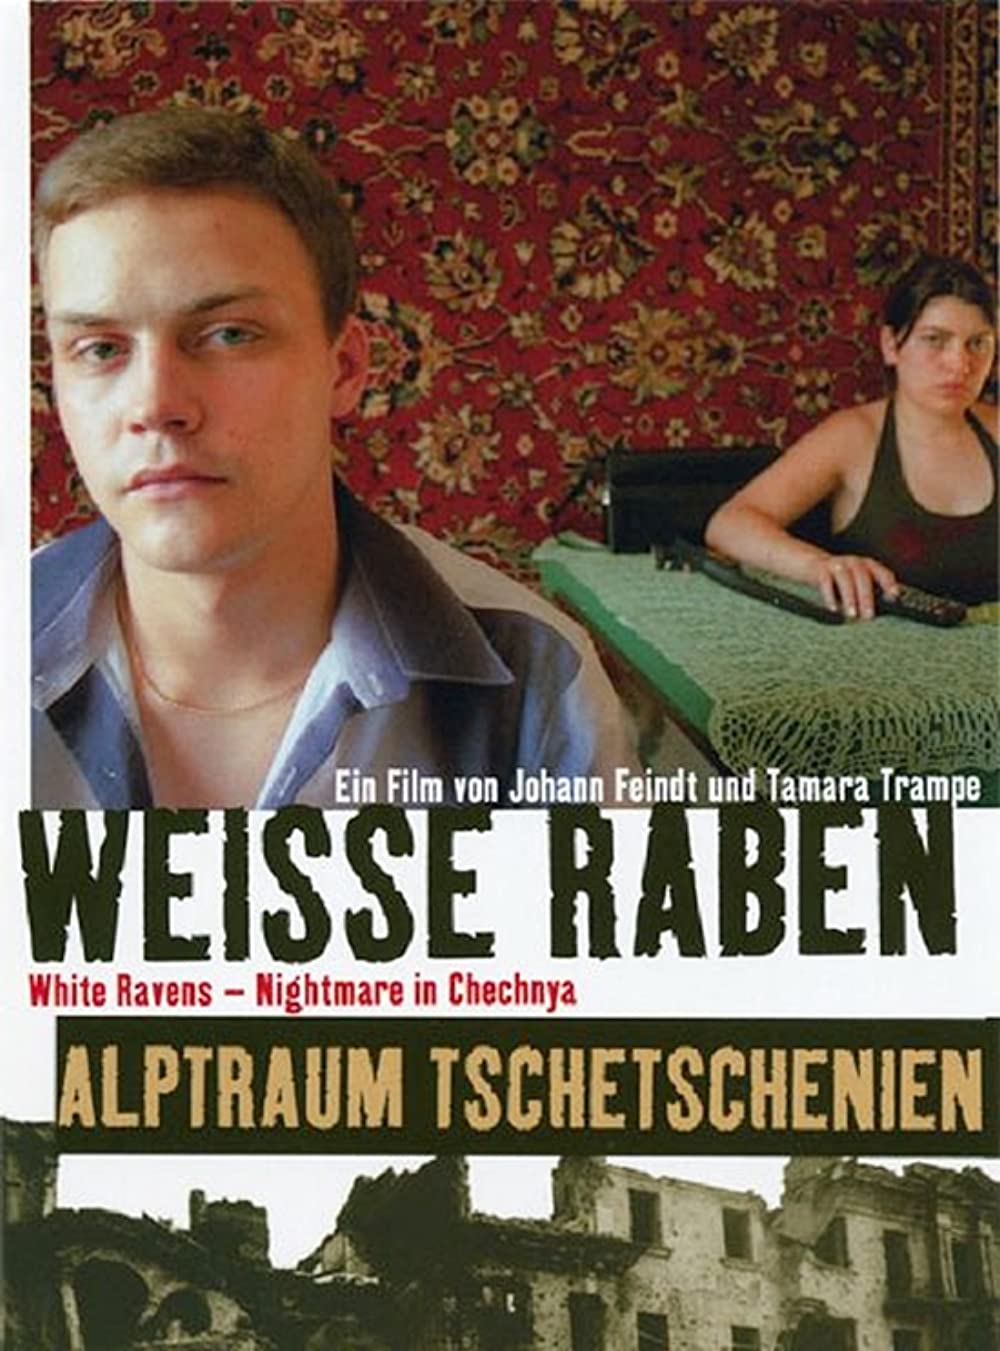 Download Weiße Raben - Alptraum Tschetschenien Movie | Weiße Raben - Alptraum Tschetschenien Review